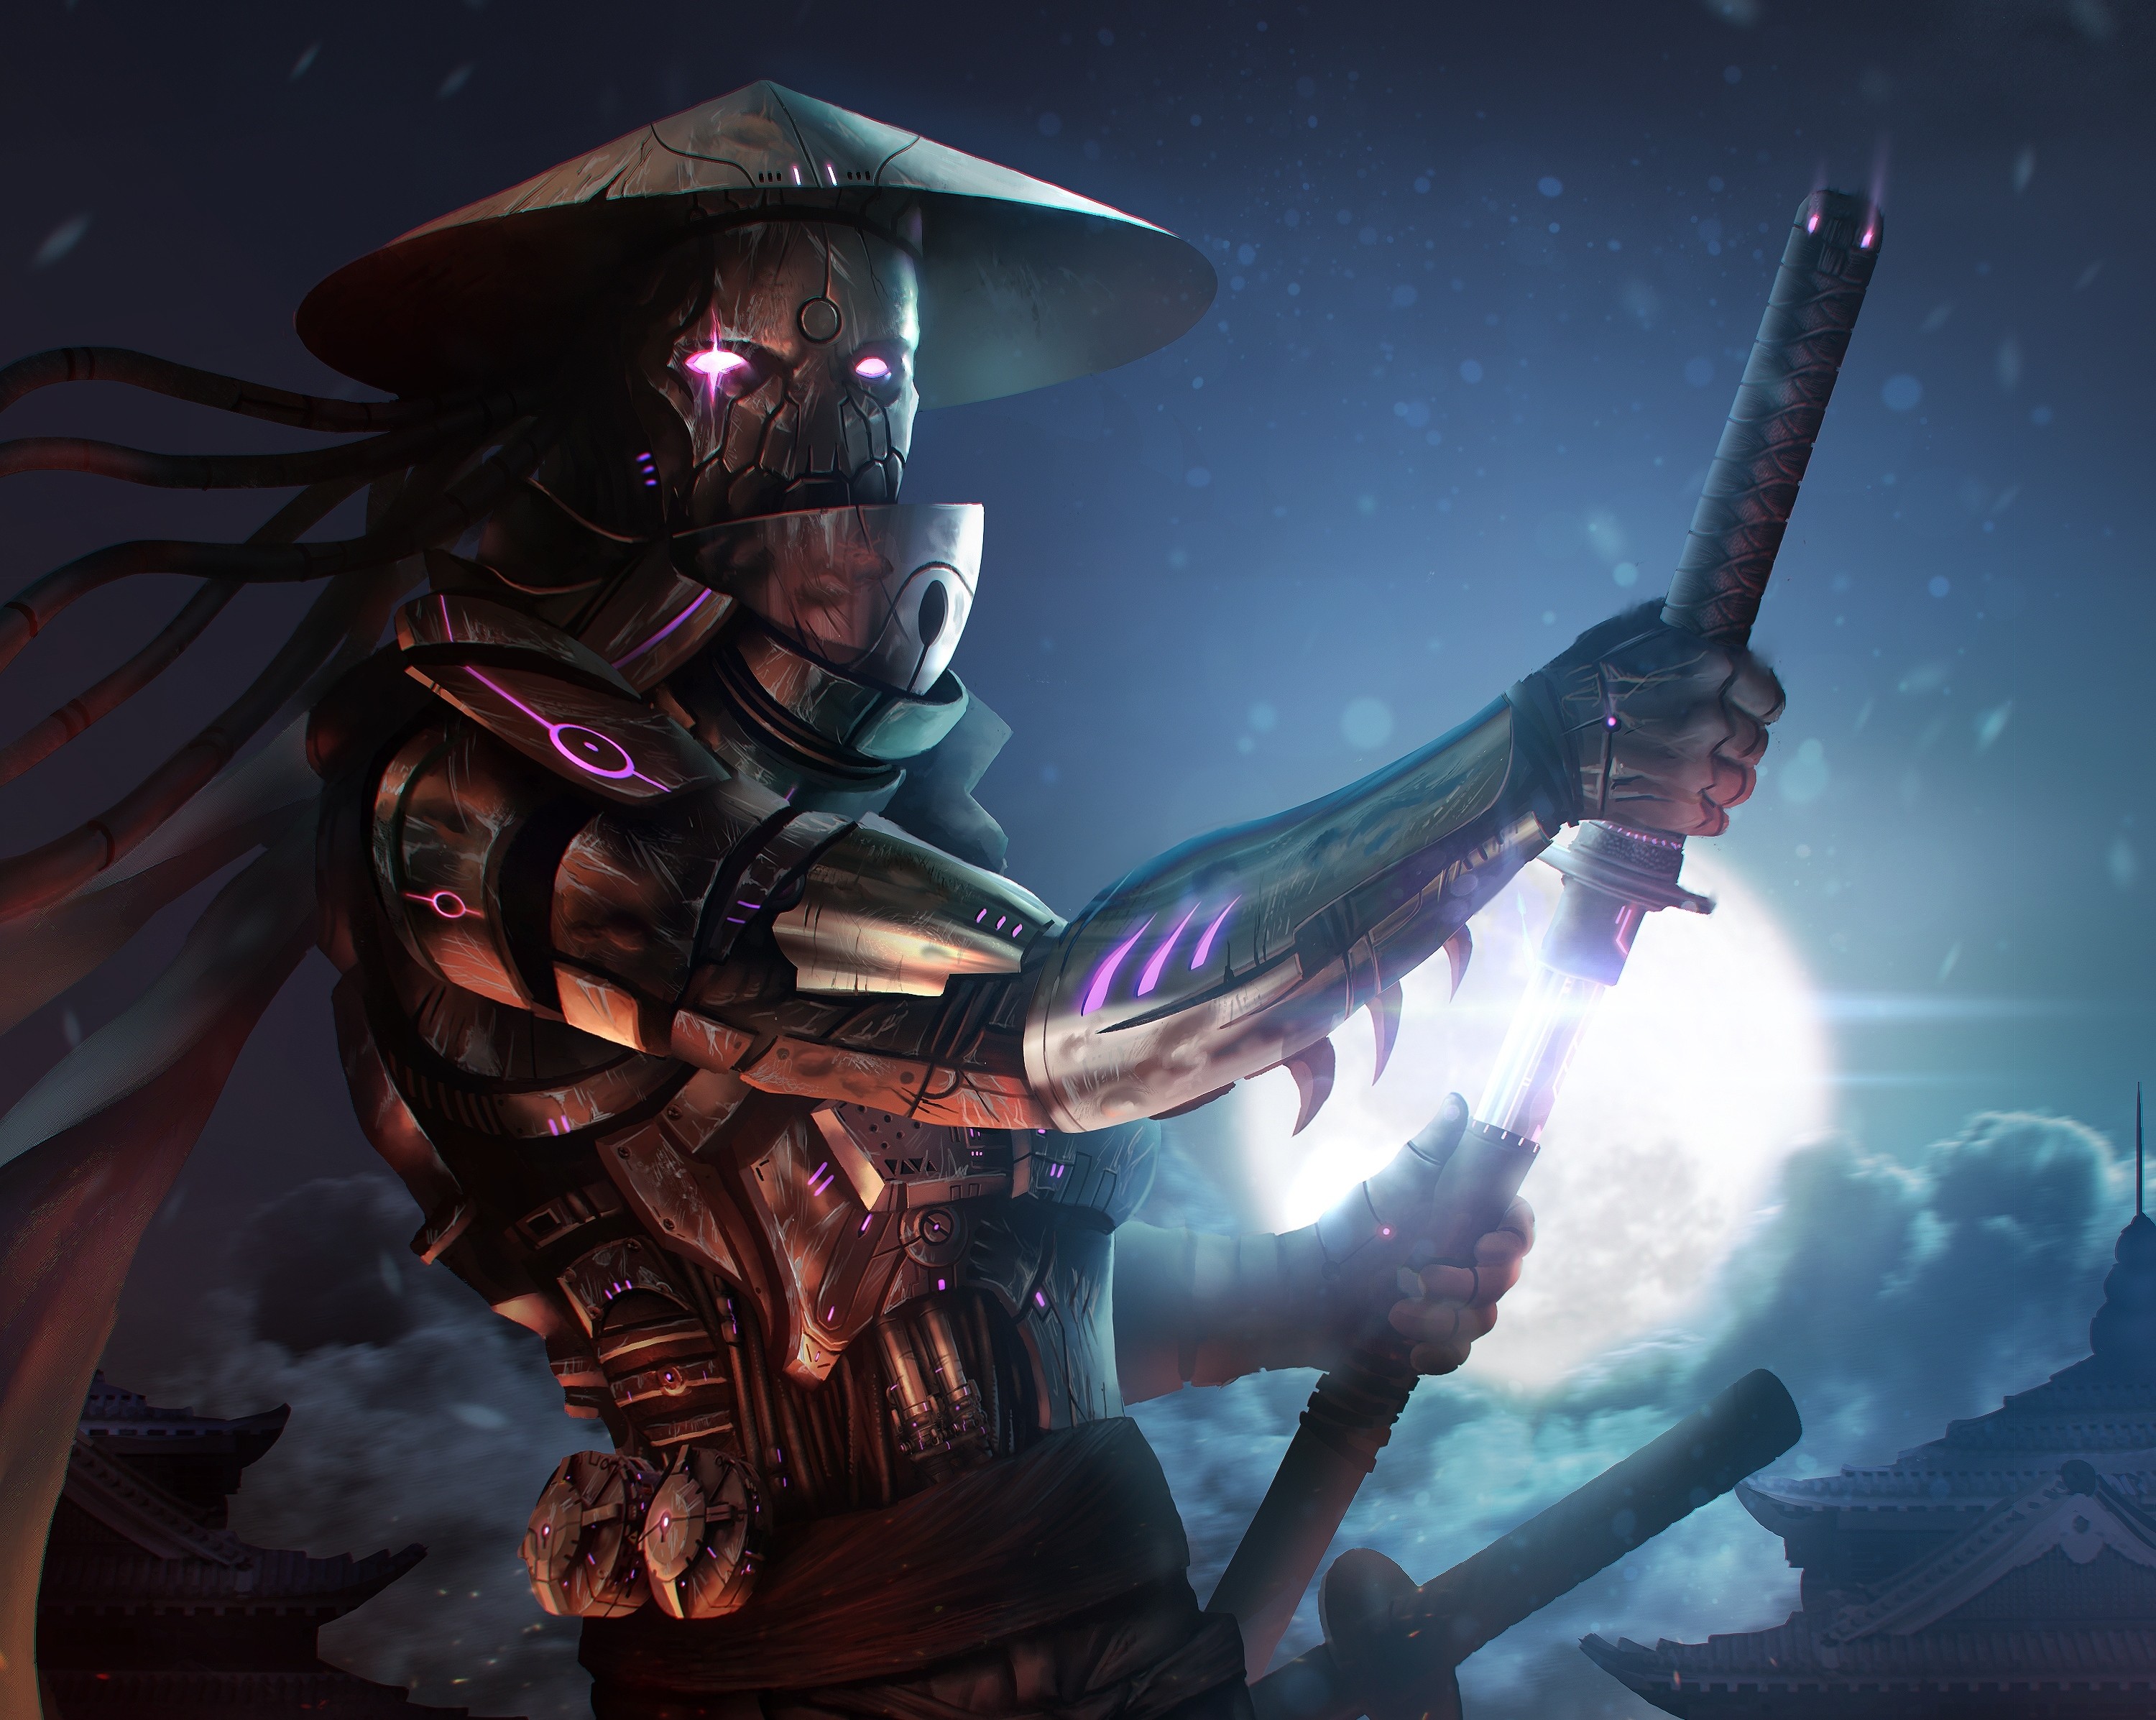 General 3000x2393 fantasy art samurai katana sword weapon glowing eyes